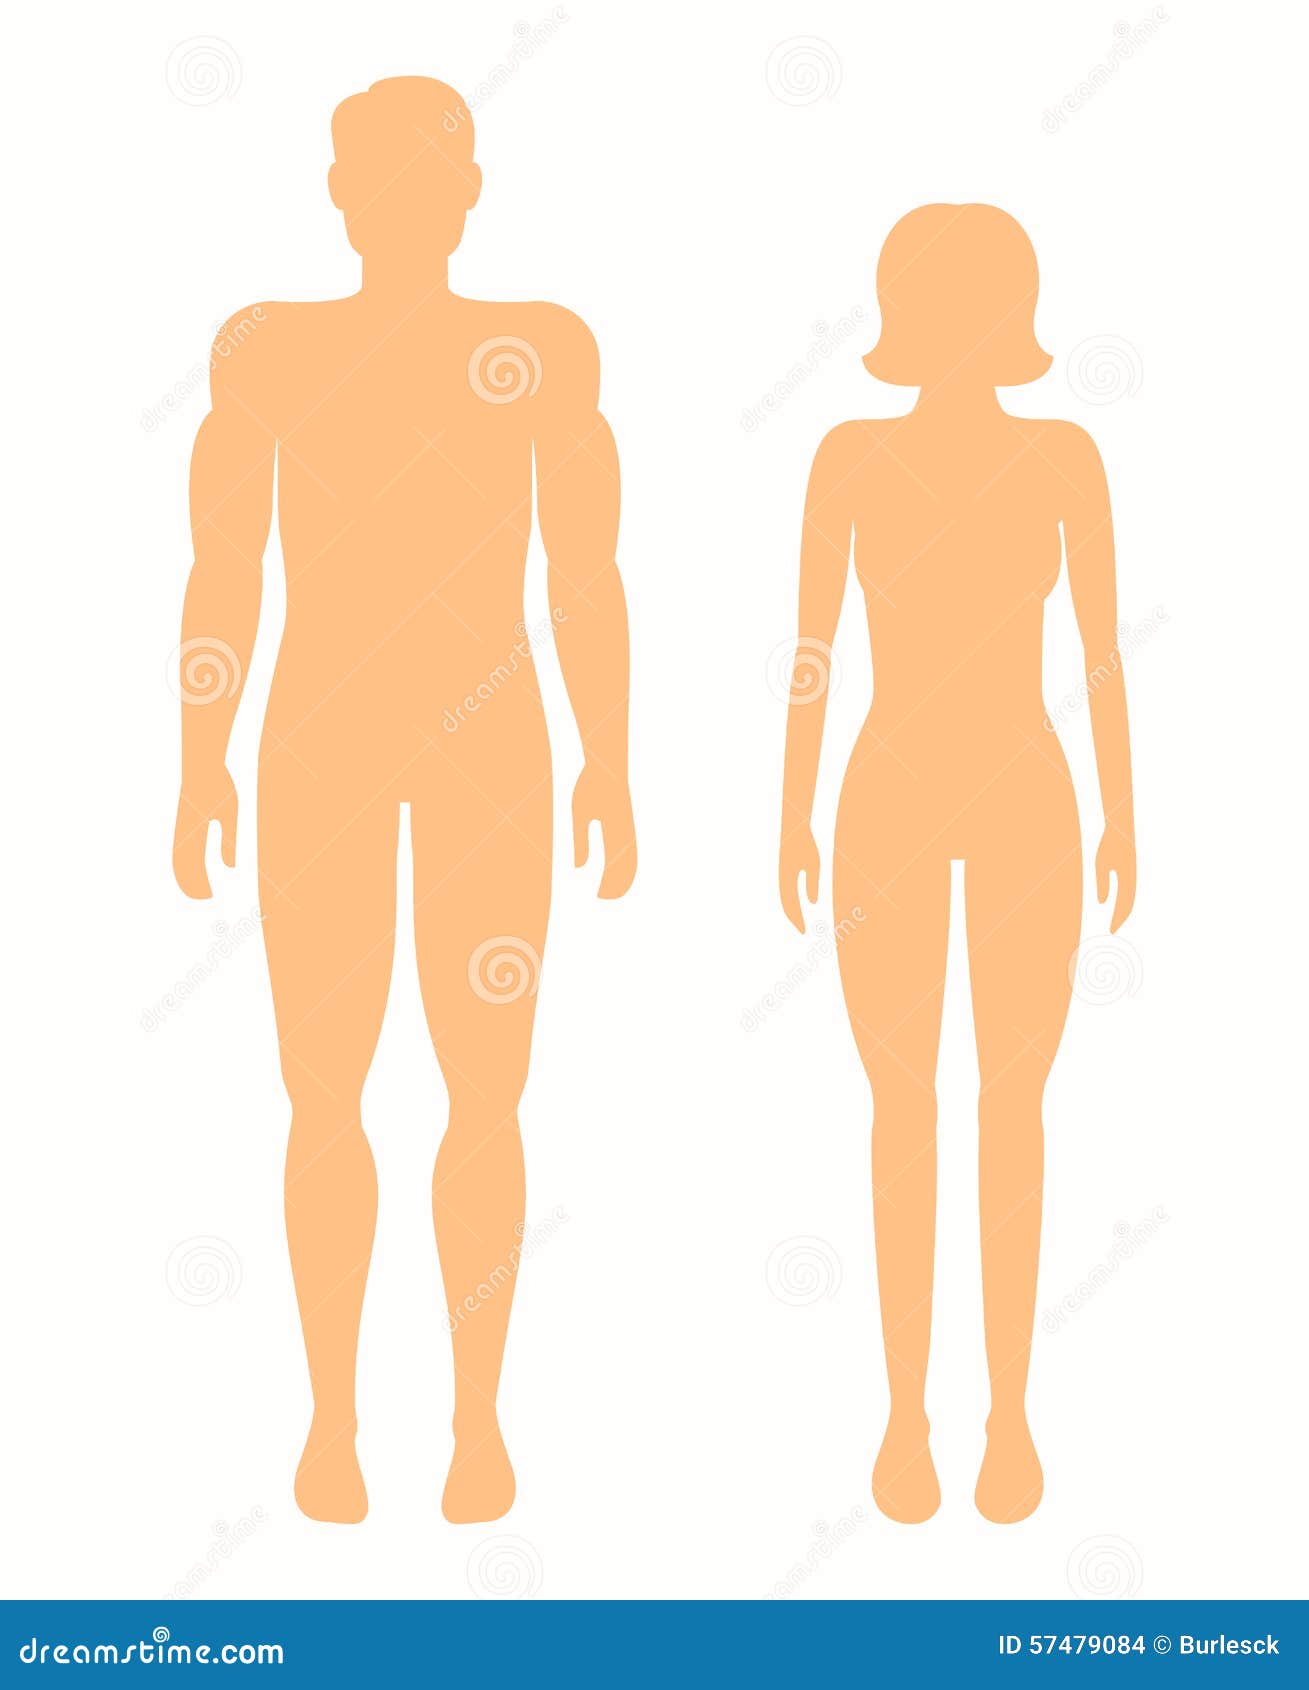 0 human. Стилизованная фигура мужчины и женщины. Очертание тела мужчины. Бежевый силуэт человека. Трафарет мужчина и женщина.